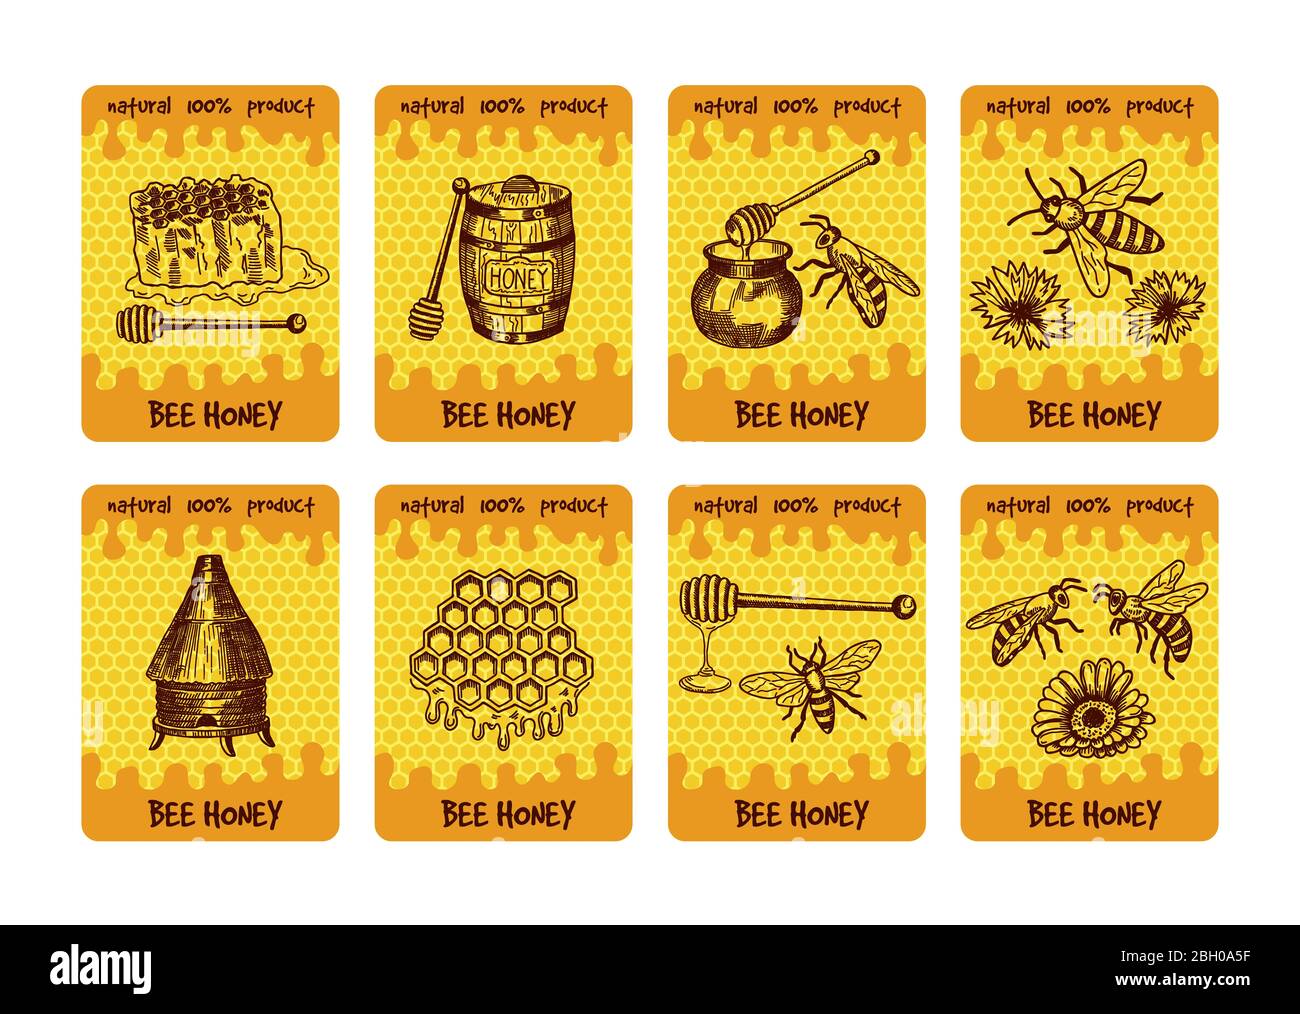 Diseño de etiquetas para el envasado de productos de miel. Ilustraciones de miel y panal de miel. Miel dulce y abeja, etiqueta de la bandera dulce de alimentos Imagen de stock -